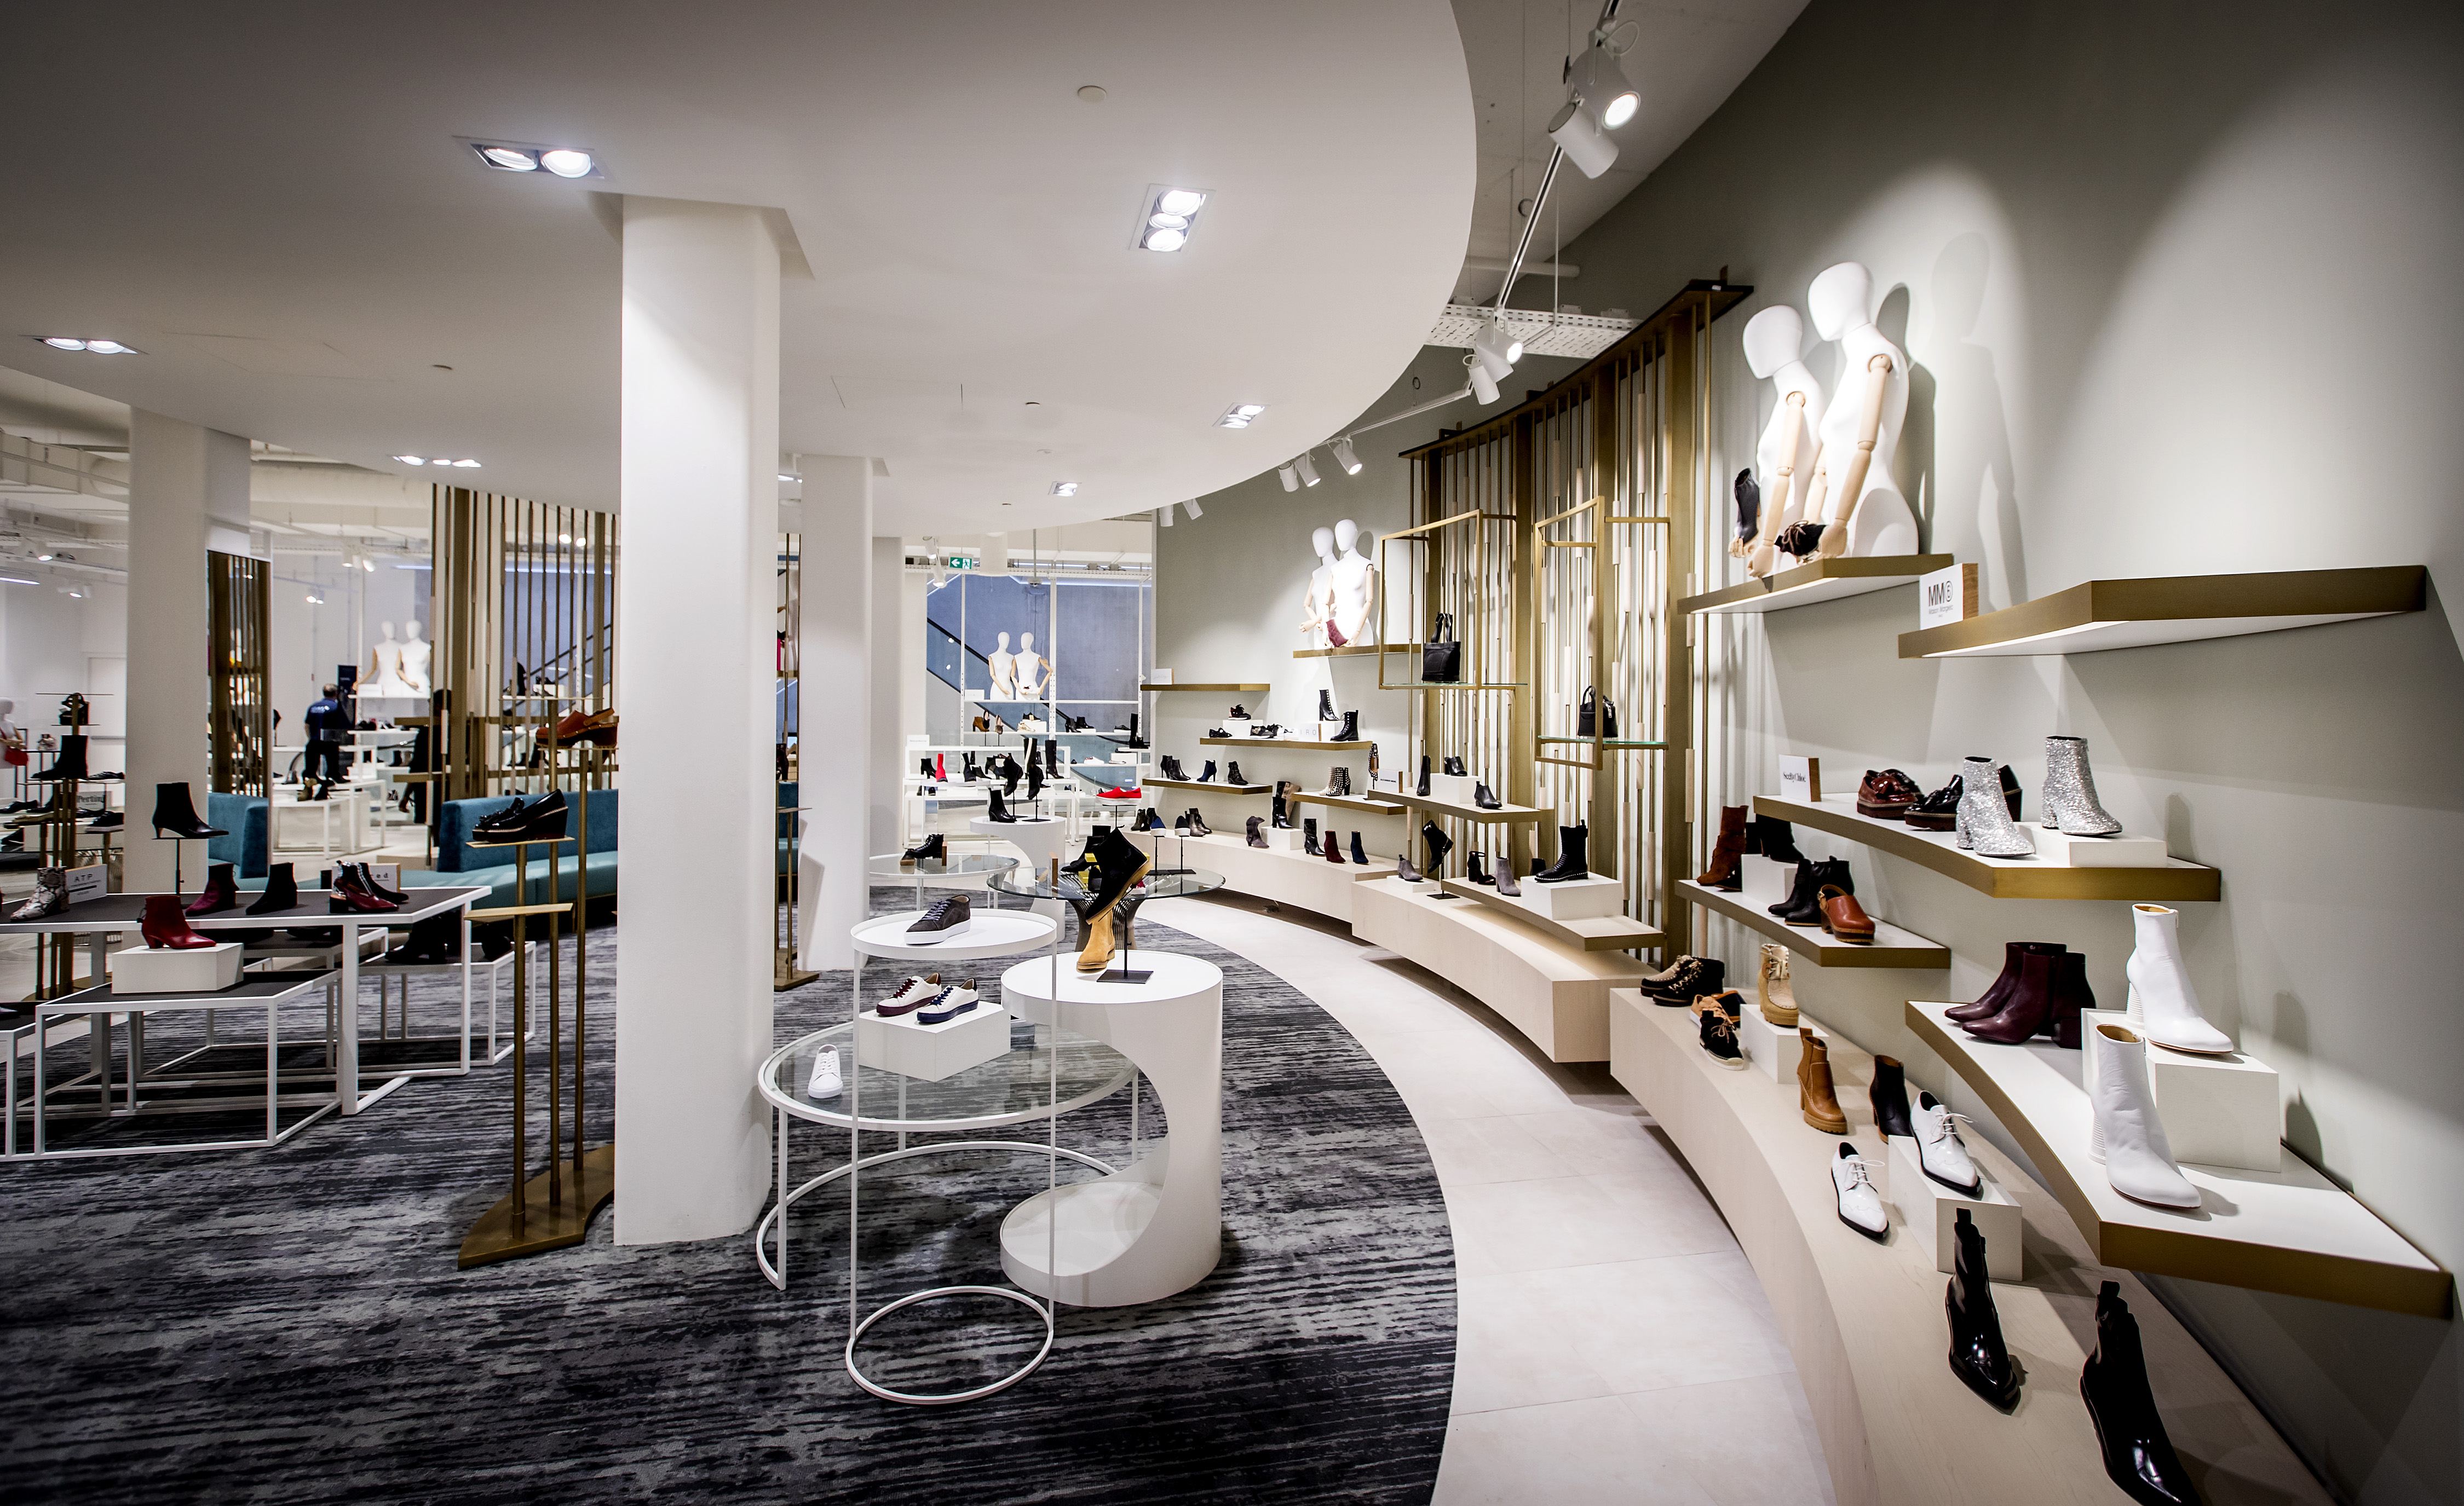 2017-09-04 10:14:04 AMSTERDAM - Schoenen afdeling in het warenhuis Hudsons Bay. De Canadese warenhuisketen opent haar eerste Nederlandse vestiging in Amsterdam. ANP KOEN VAN WEEL